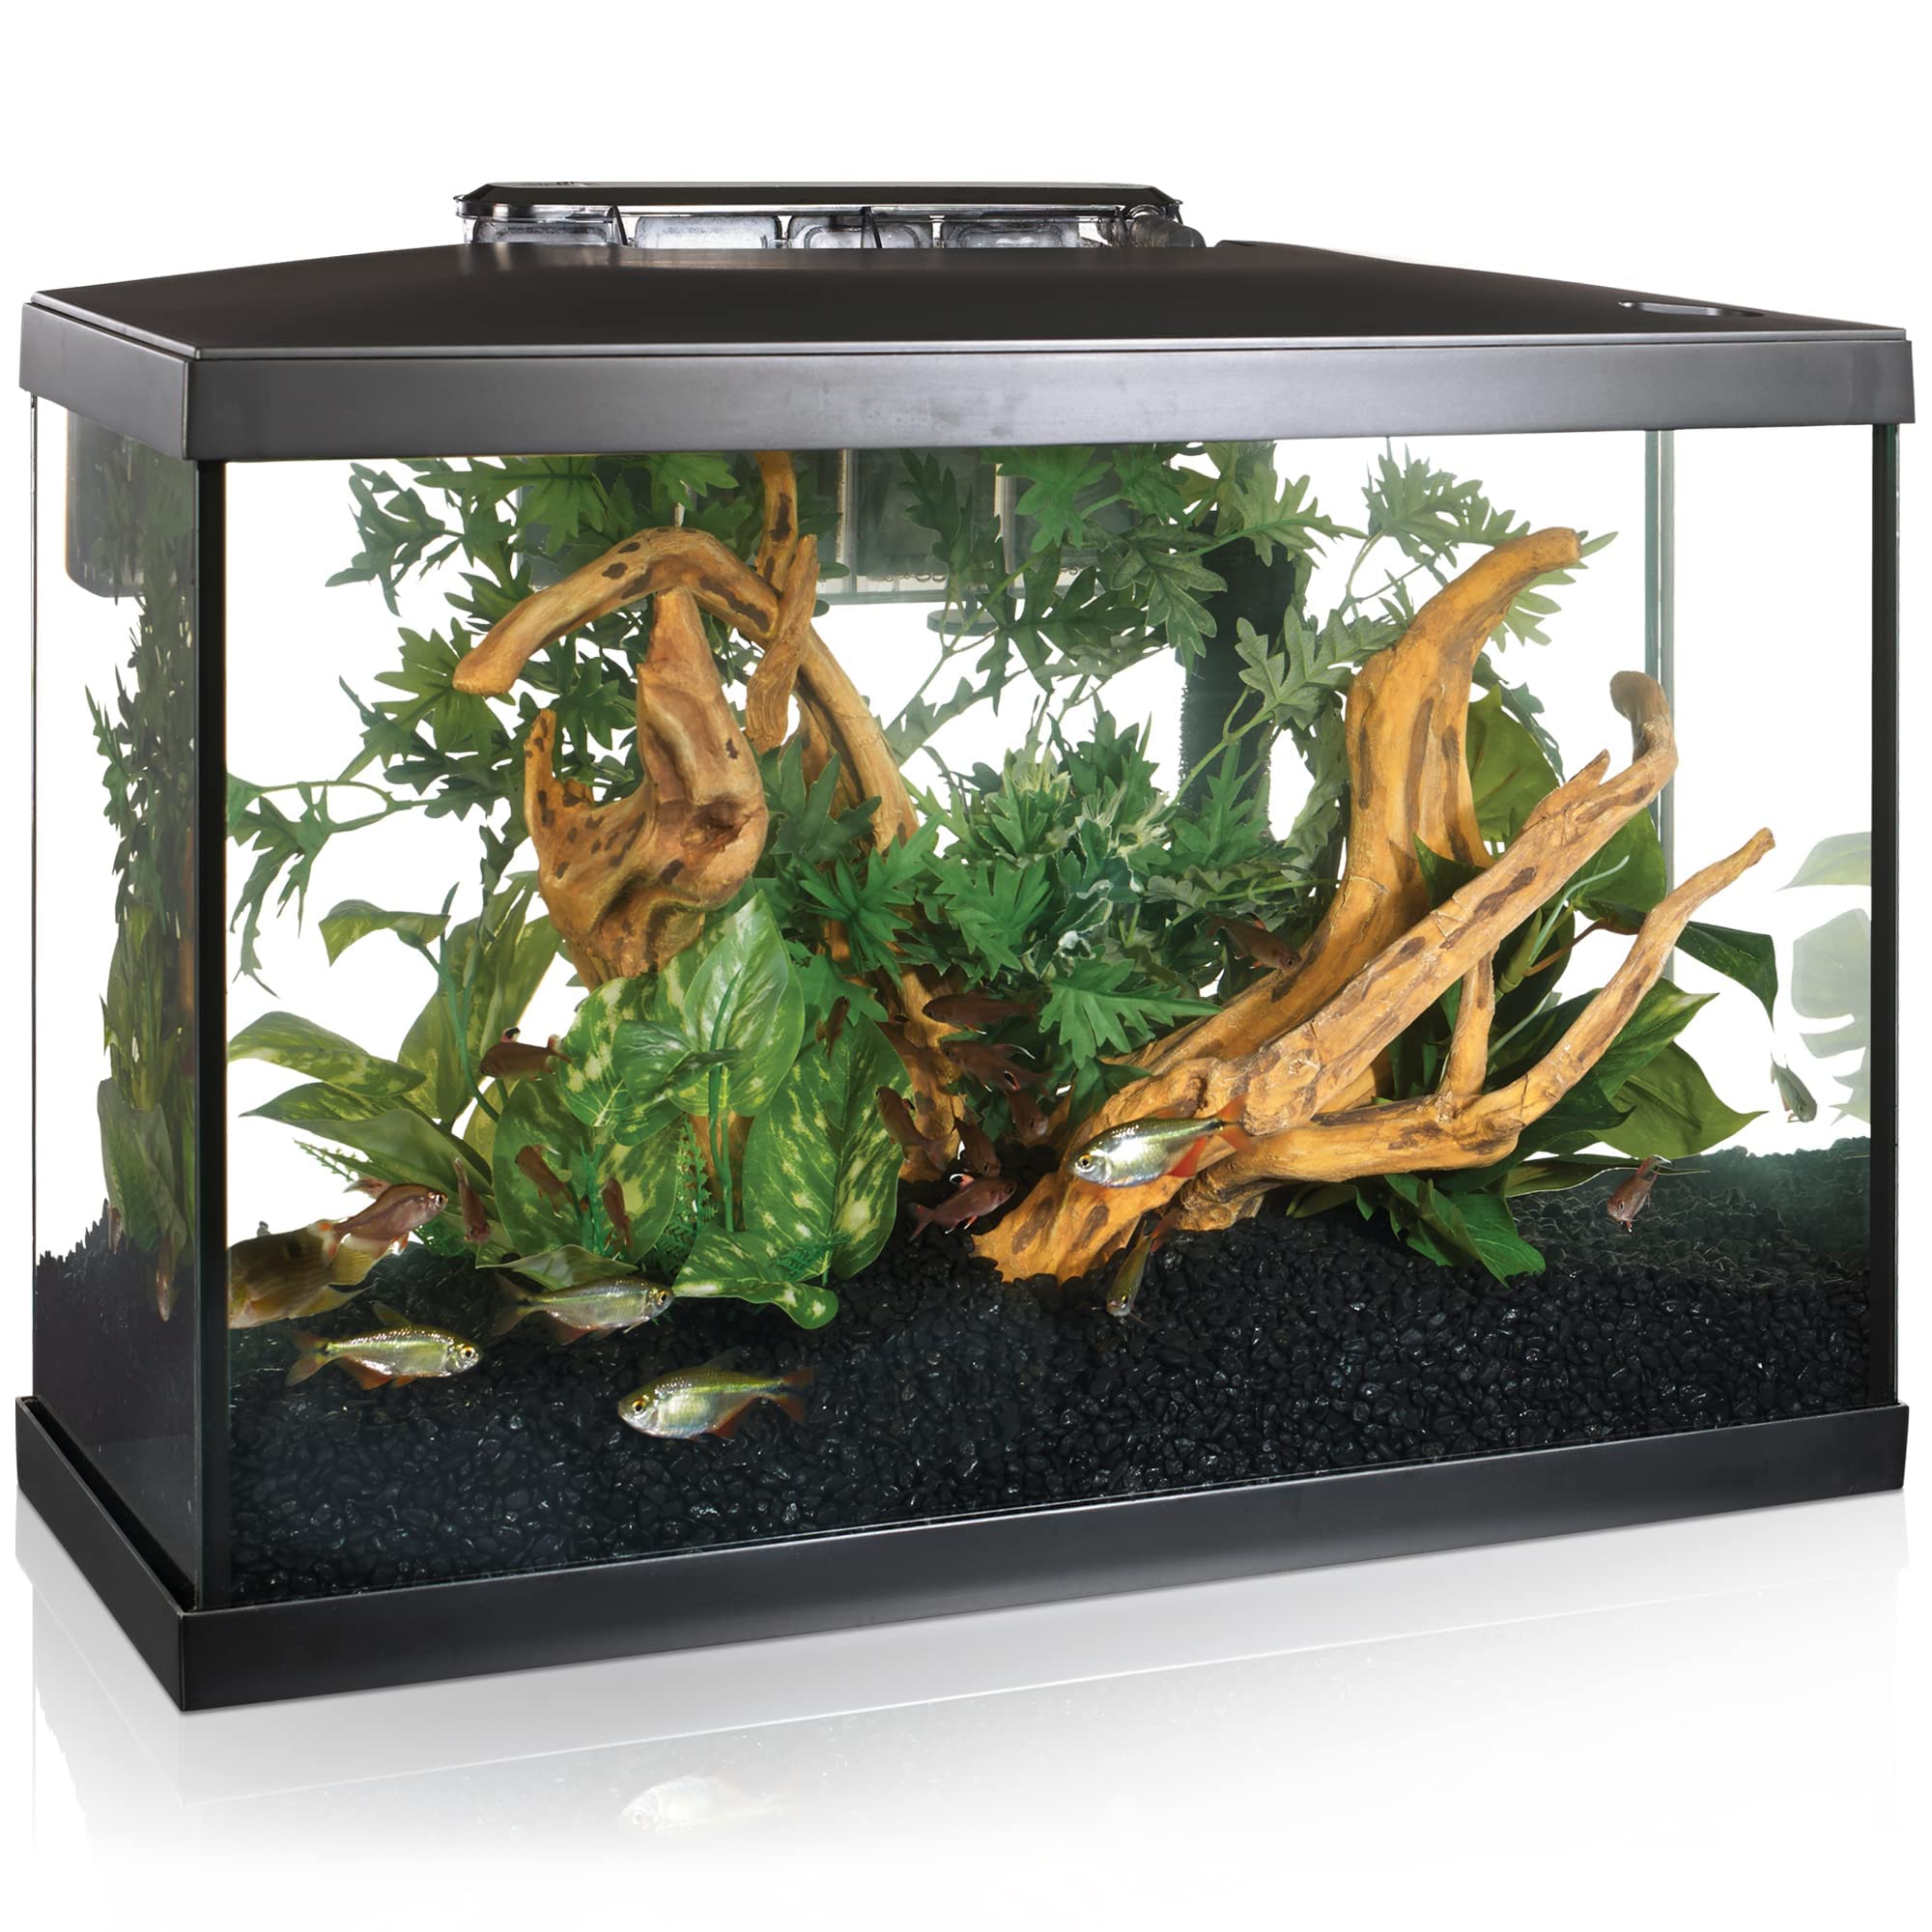 Marina LED Aquarium Kit: 10 Gallon